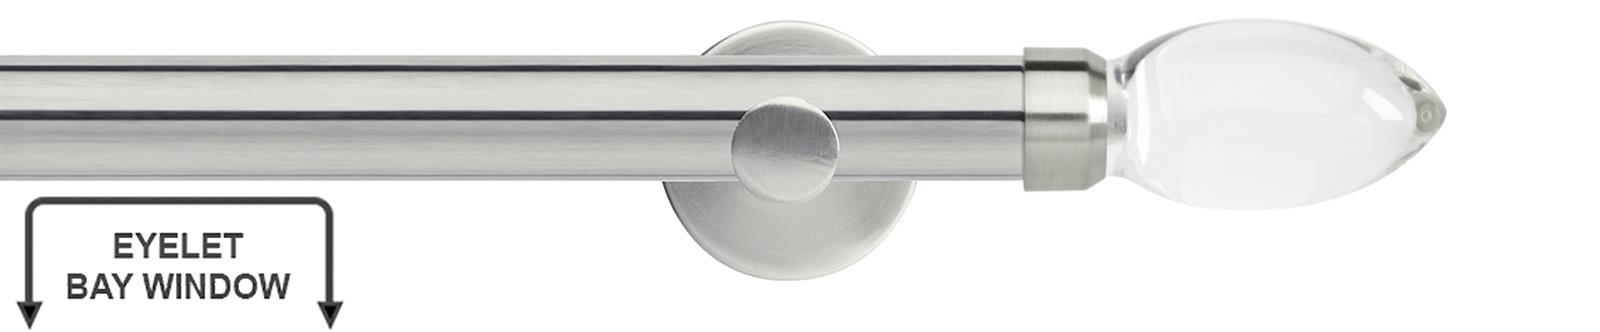 Neo Premium 28mm Eyelet Bay Window Pole Stainless Steel Clear Teardrop